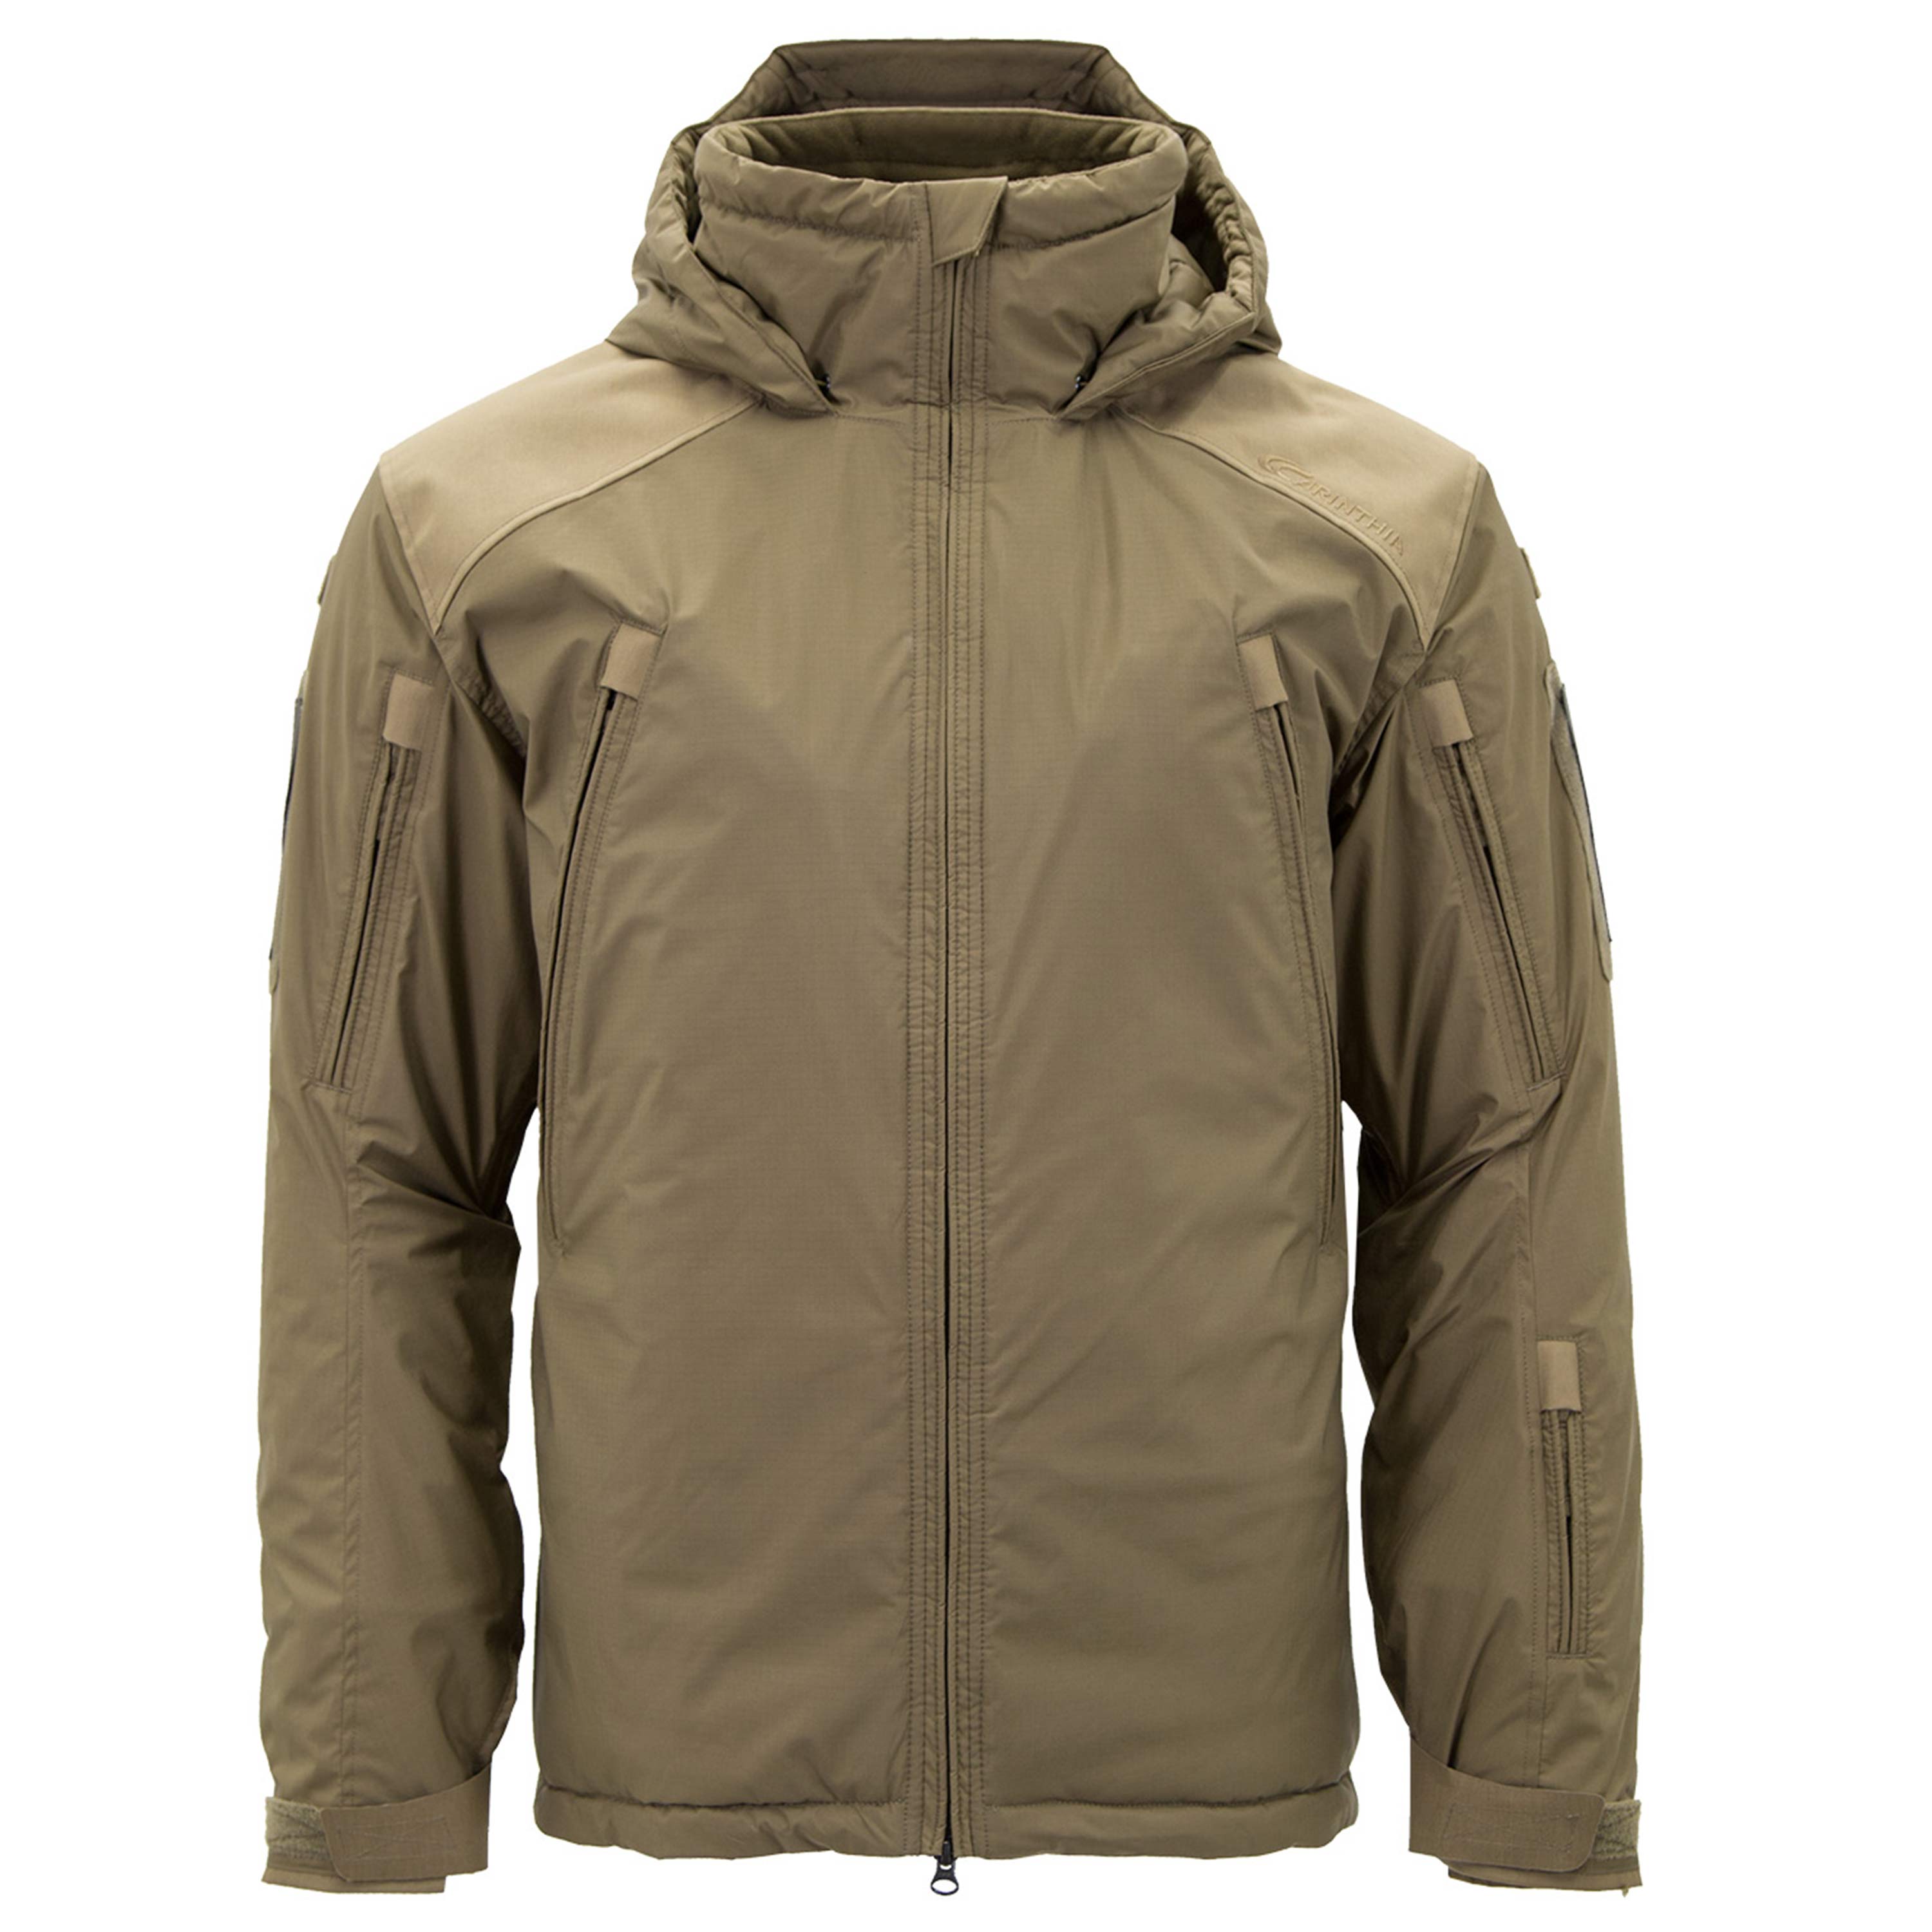 Carinthia Jacket coyote Carinthia Jacket MIG 4.0 coyote | Winter Jackets | Jackets | Men | Clothing